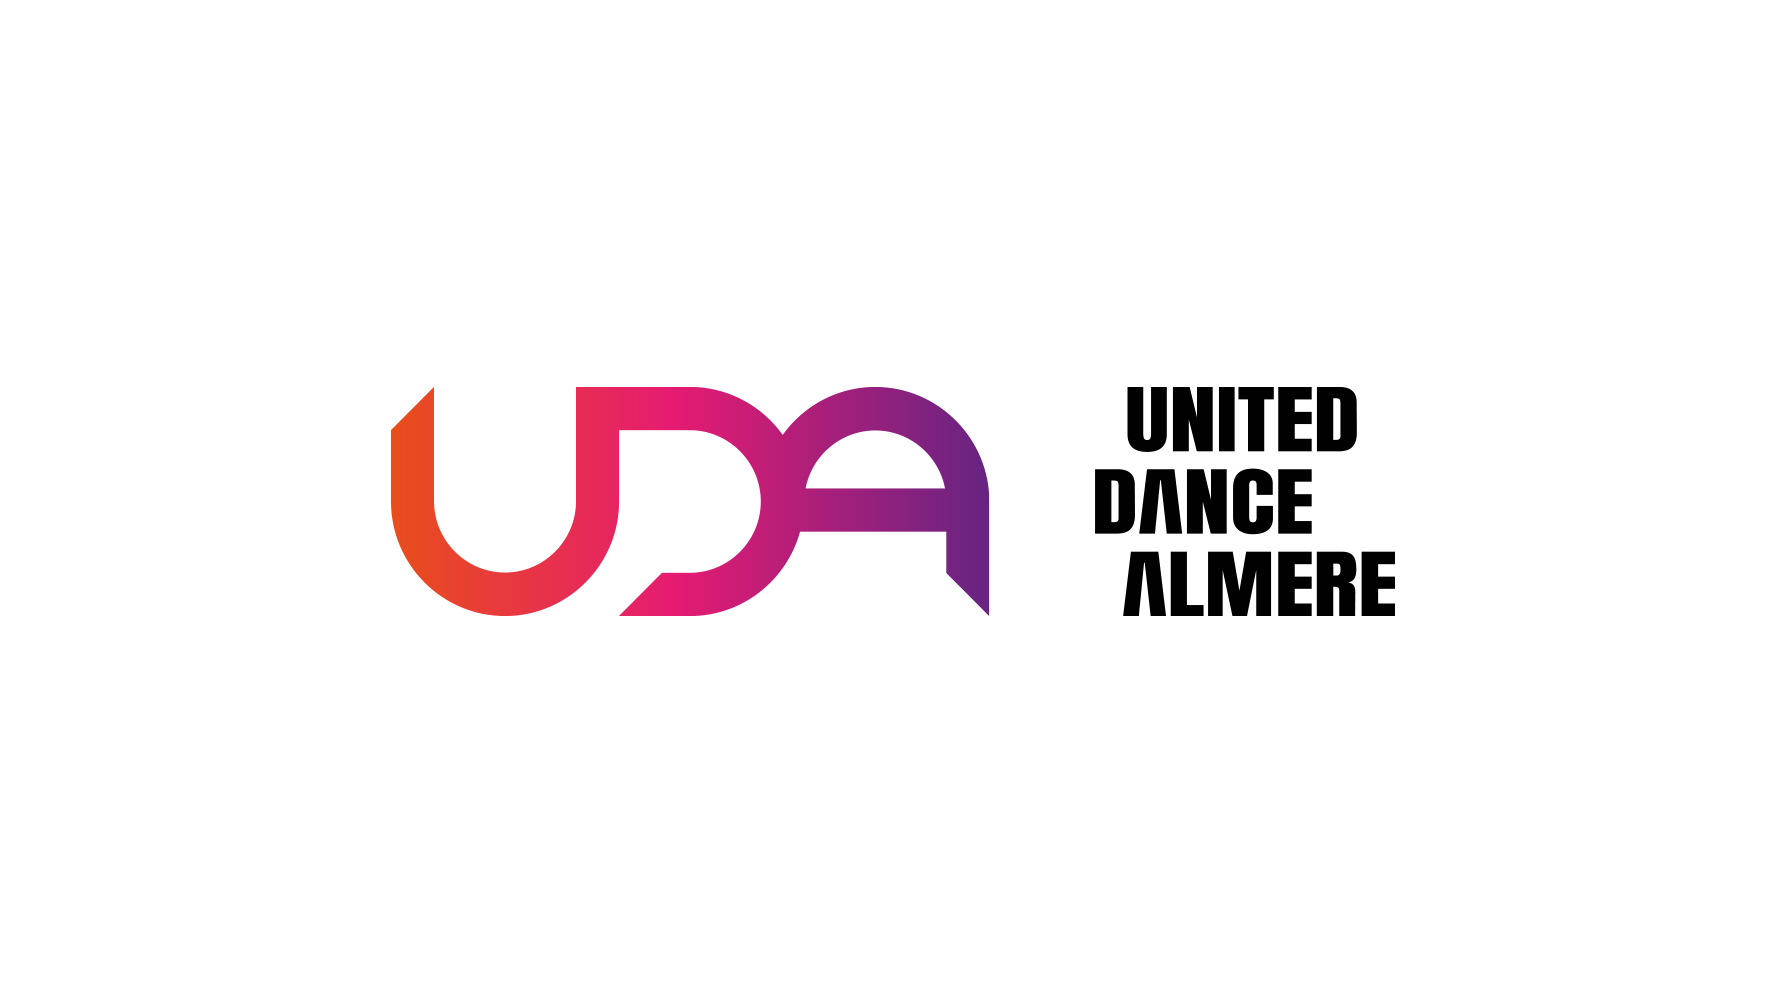 untited-dance-almere-create-the-brand-3